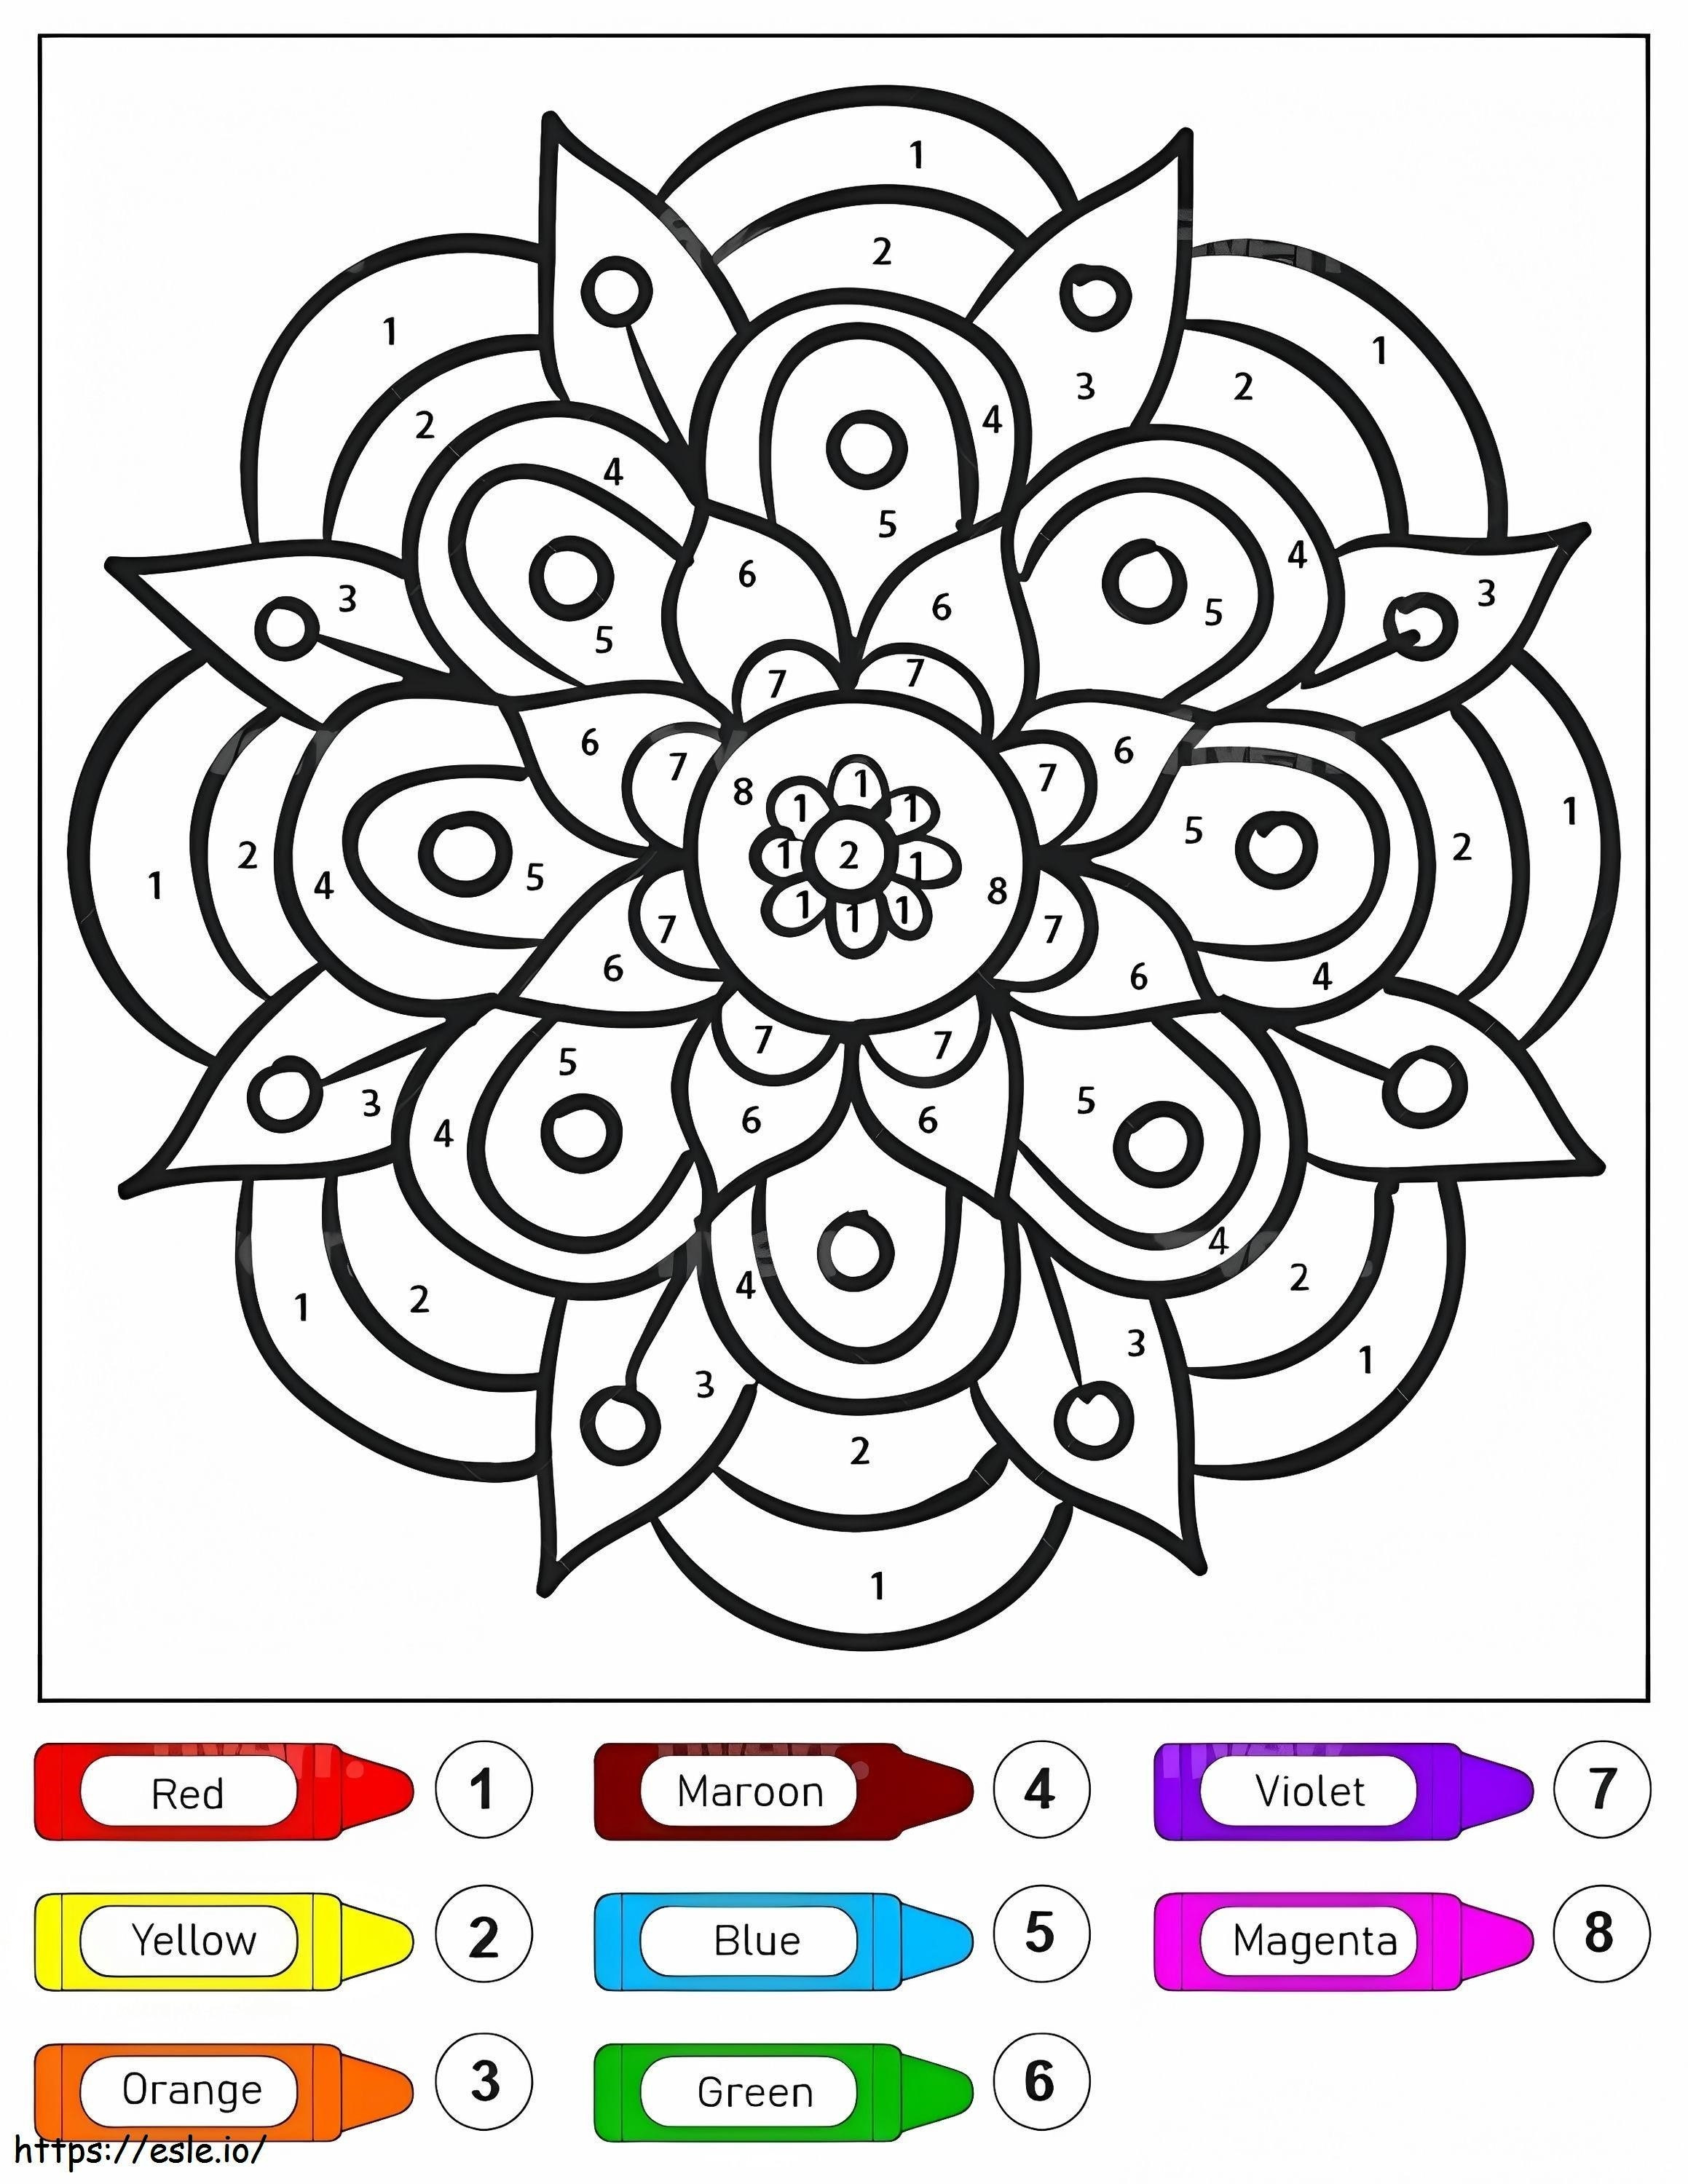 Mandala con bonito estampado de flores para niños, colorear por números para colorear